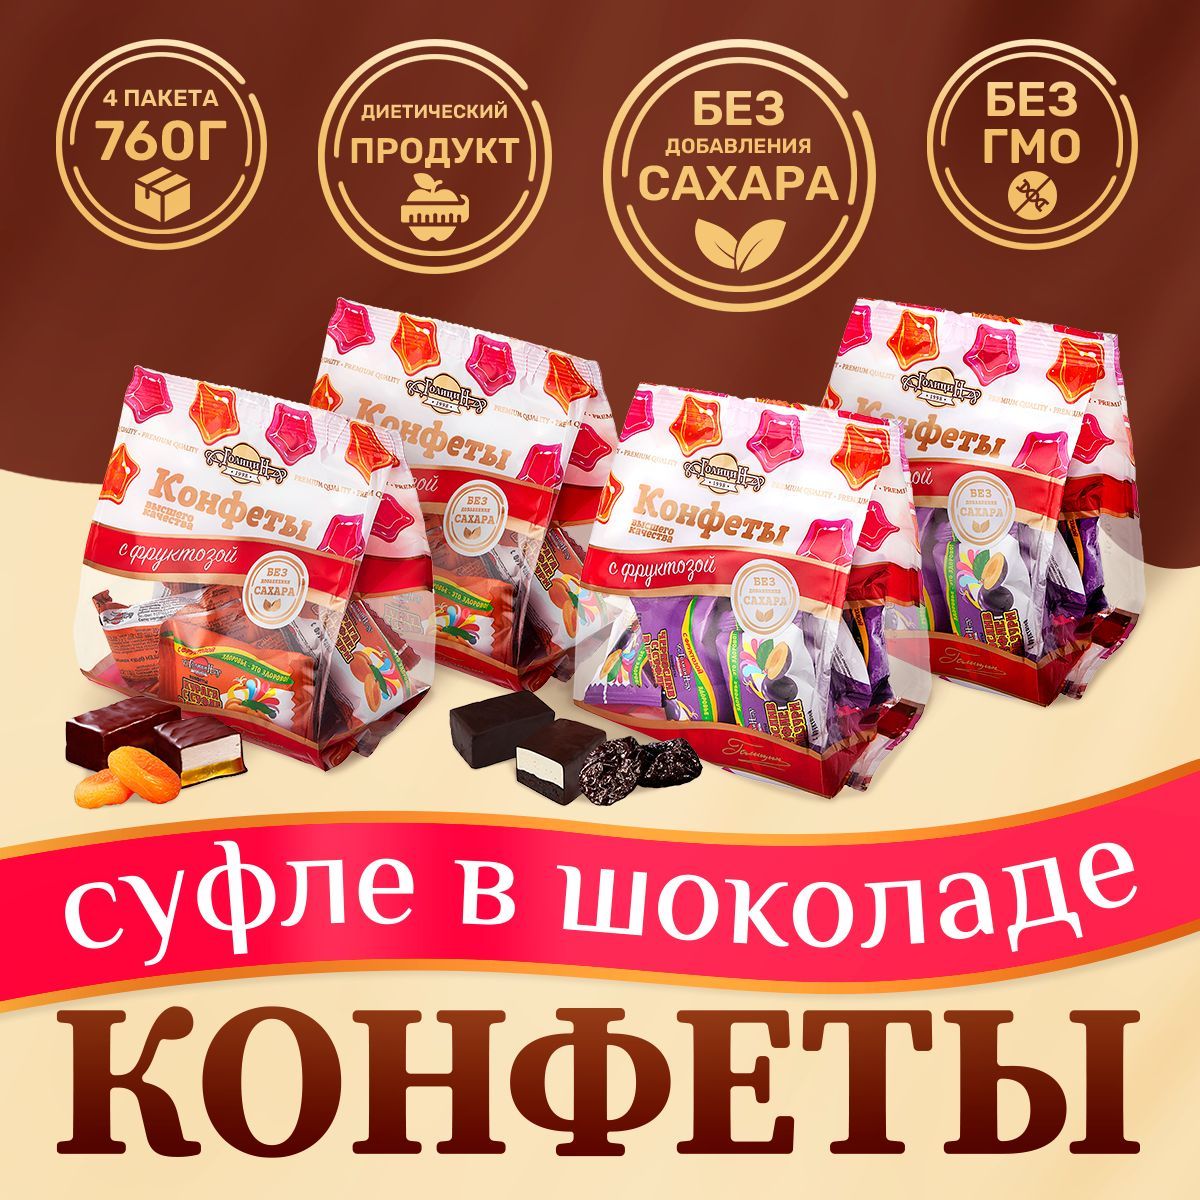 Набор конфет Голицин Суфле с фруктами без сахара Курага и Чернослив, 4 шт, 760 г